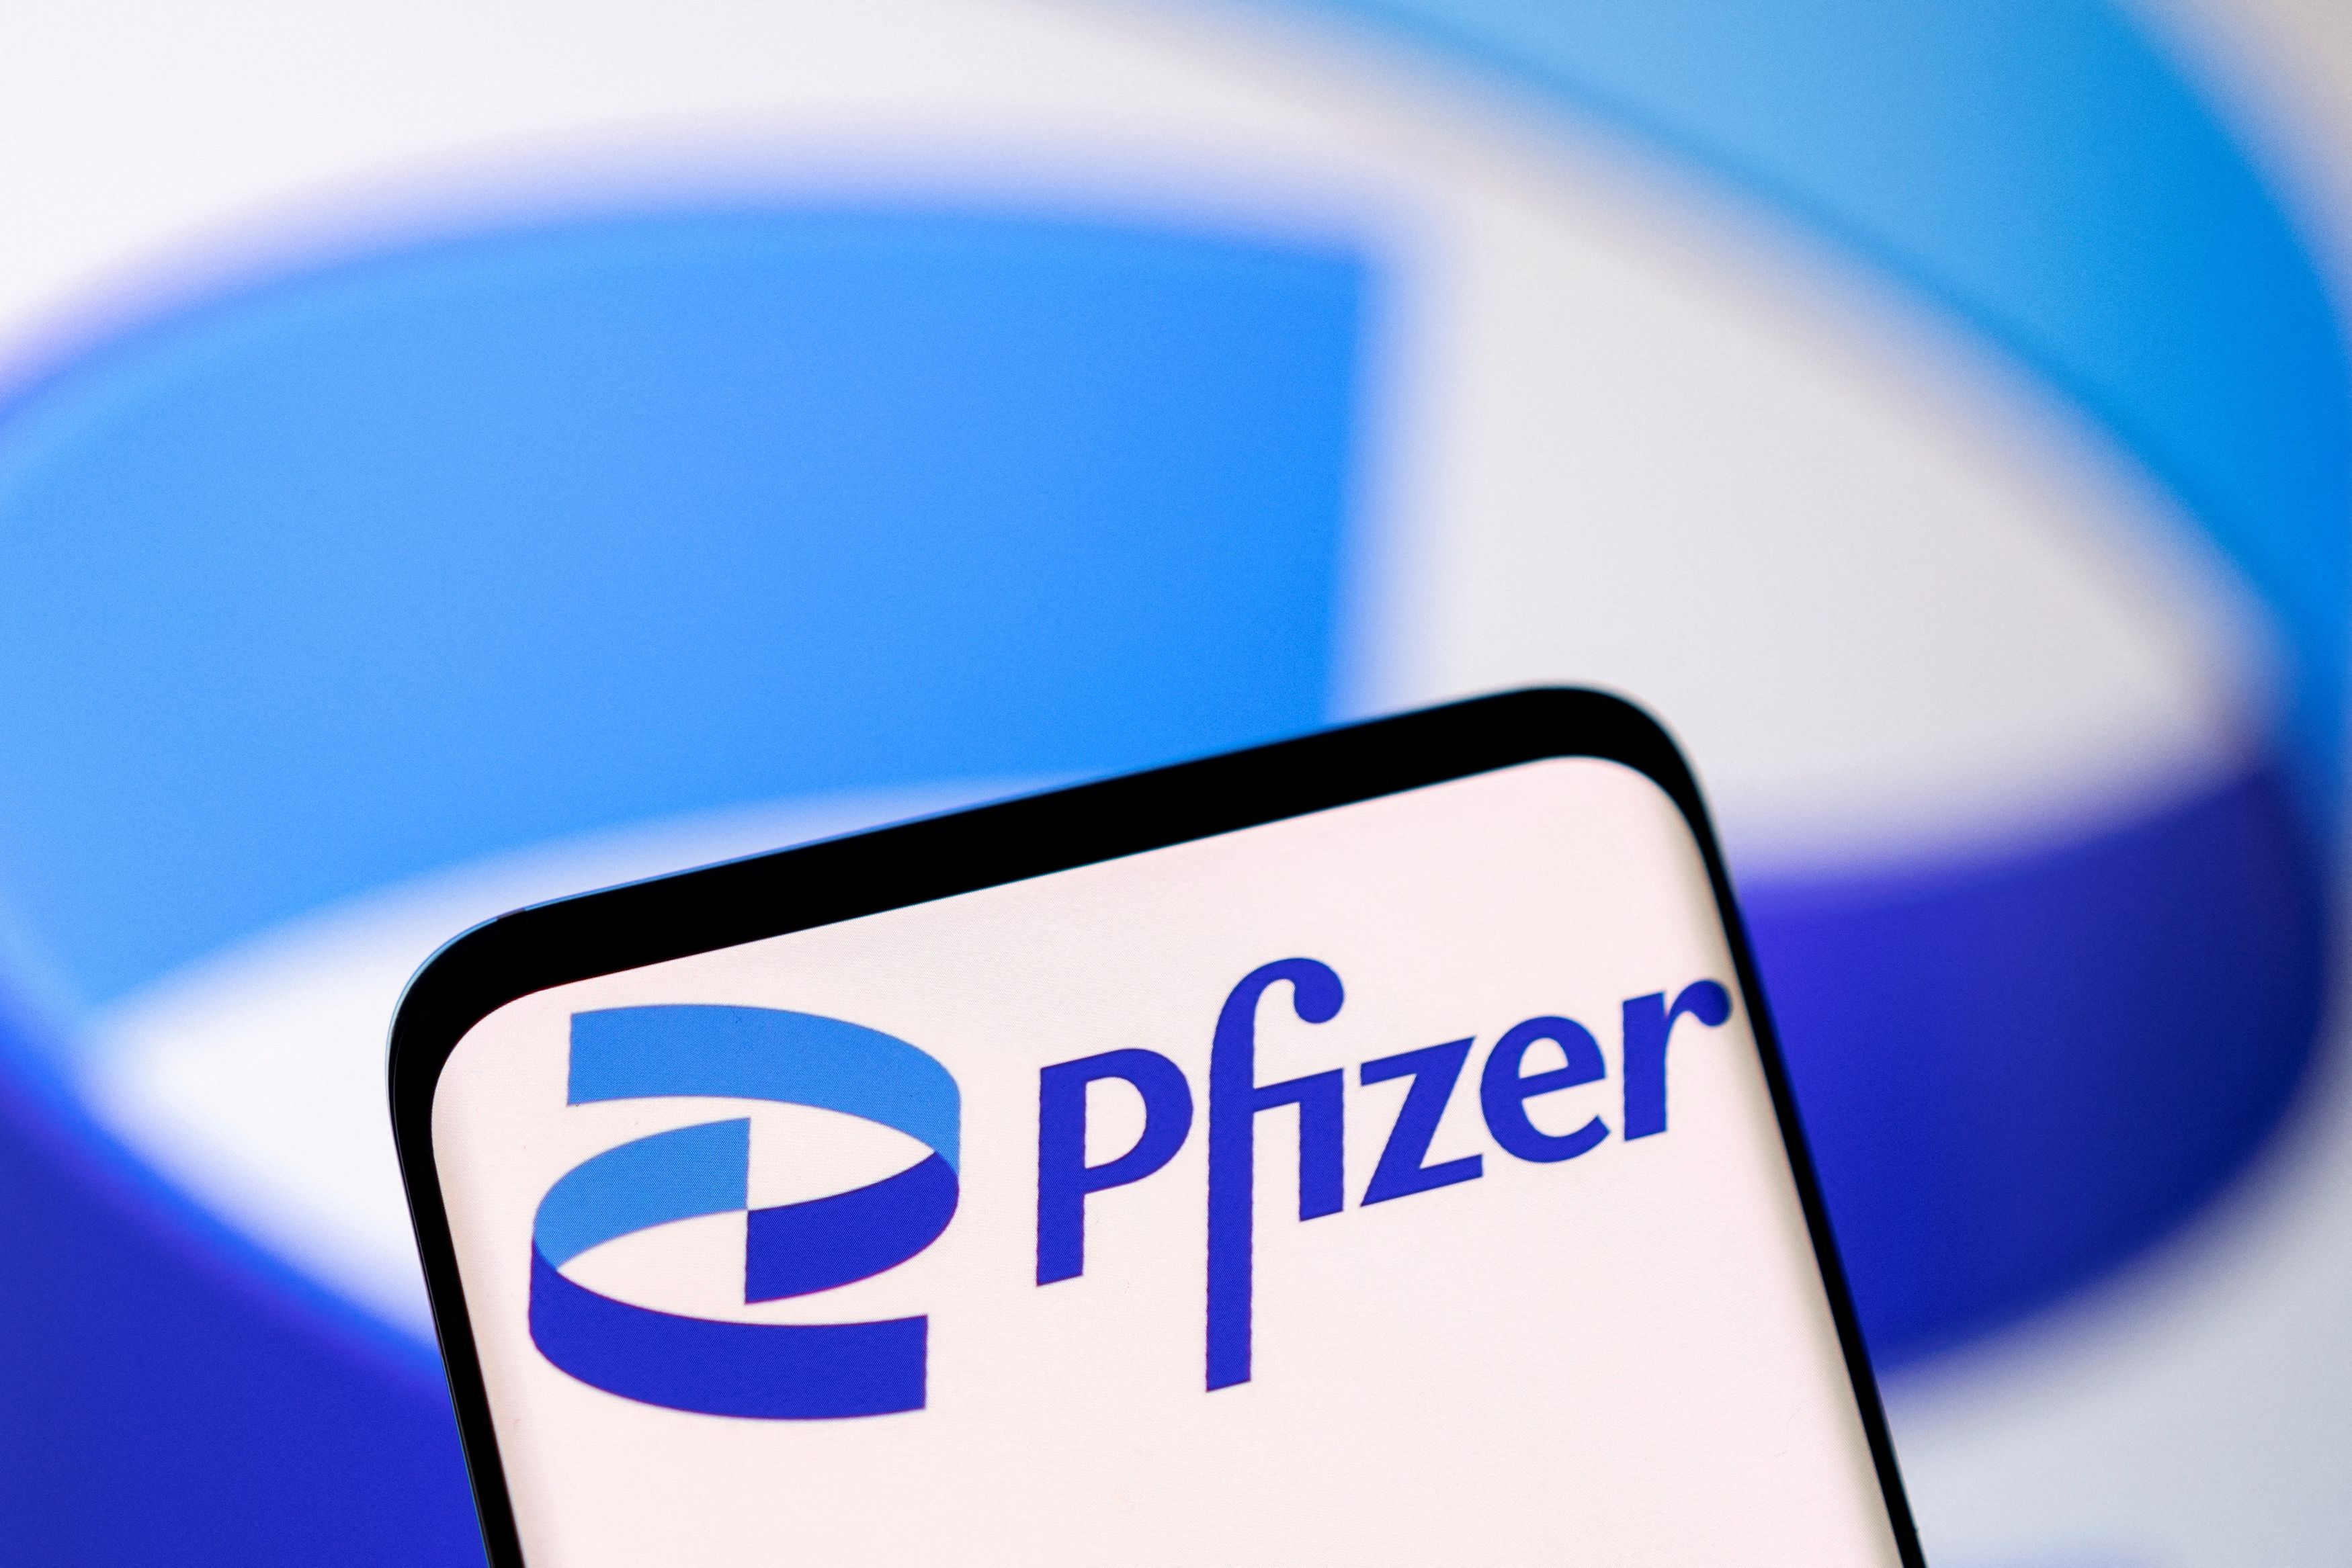 Εμβόλιο: Αναθεωρείται το συμβόλαιο με Pfizer, η ΕΕ θα πληρώσει πρόστιμο για τις πλεονάζουσες δόσεις